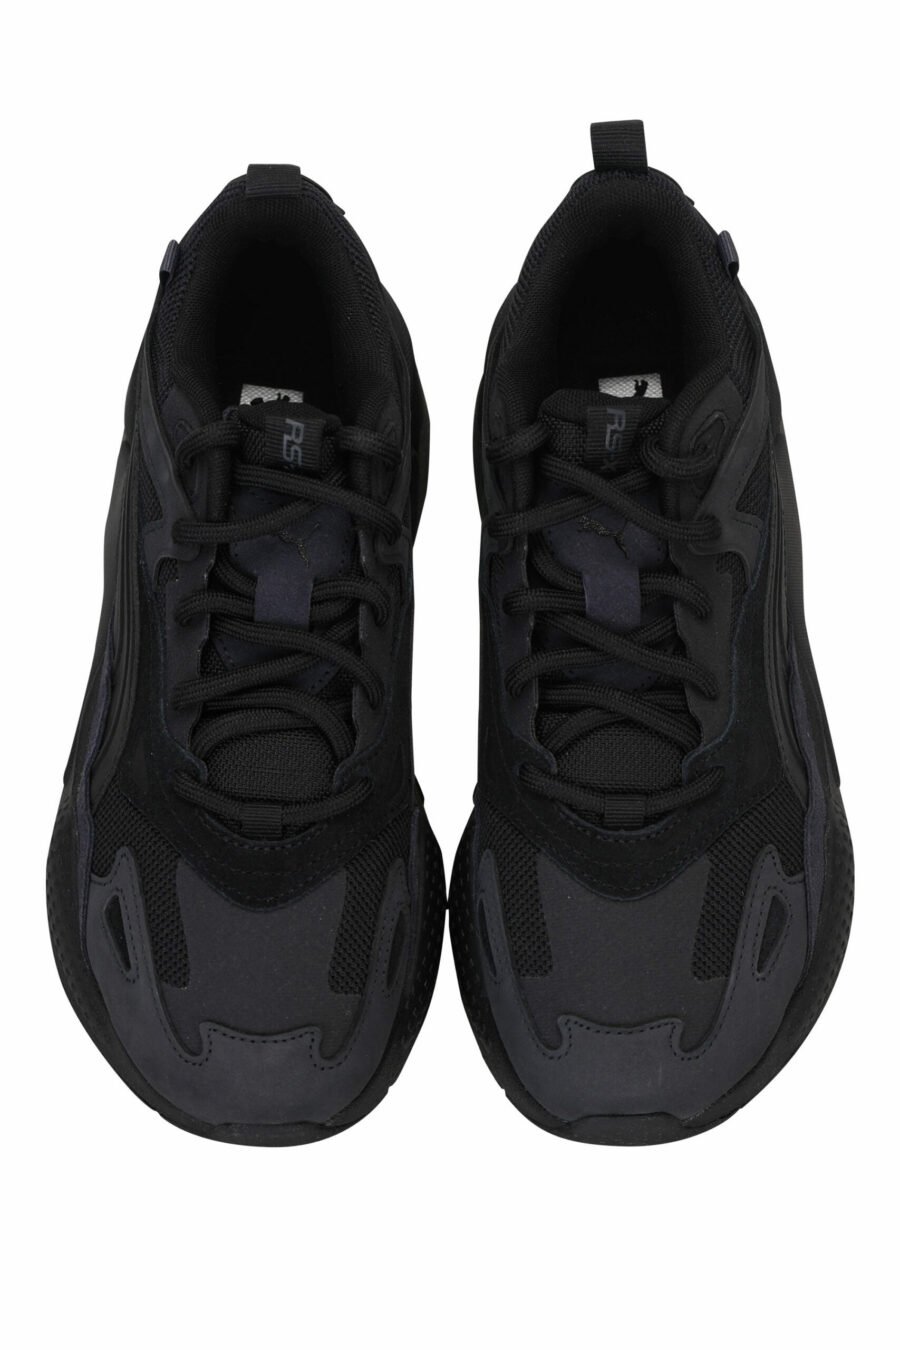 Sapatos pretos mistos "RS-X" com mini-logotipo - 4065452600723 4 scaled